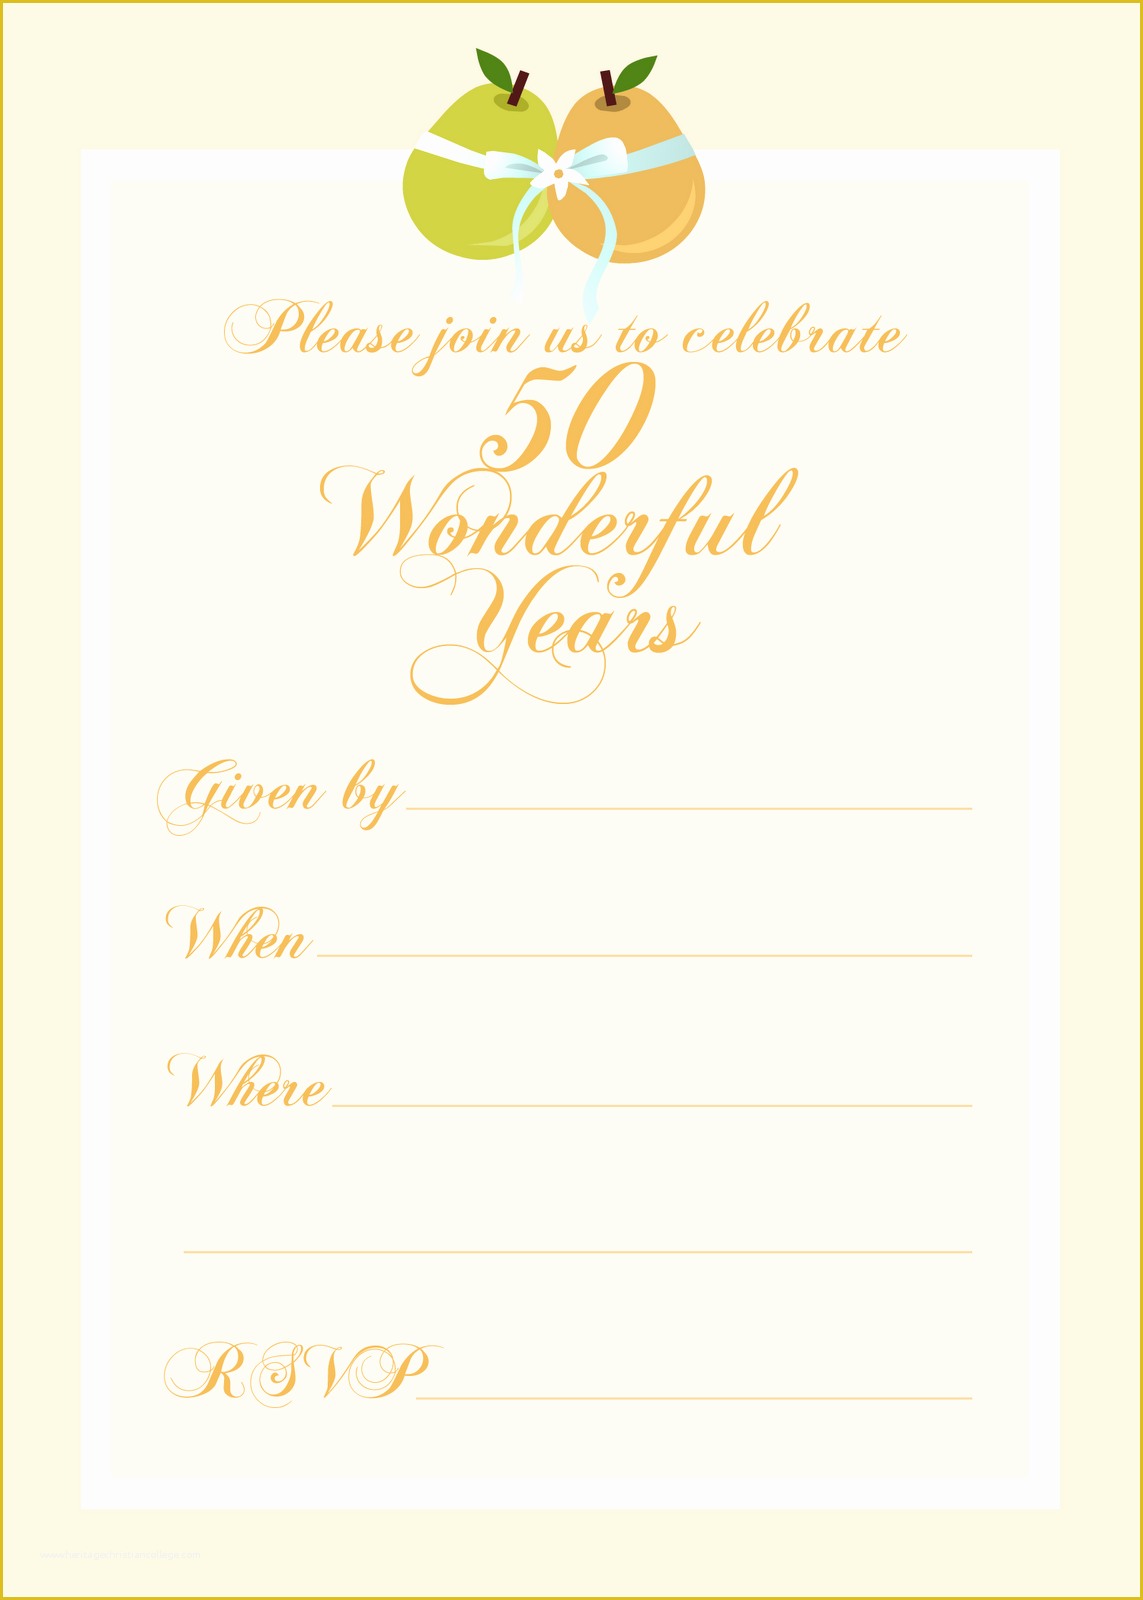 Free Printable 50th Wedding Anniversary Invitation Templates Of Free Printable Party Invitations Free 50th Wedding